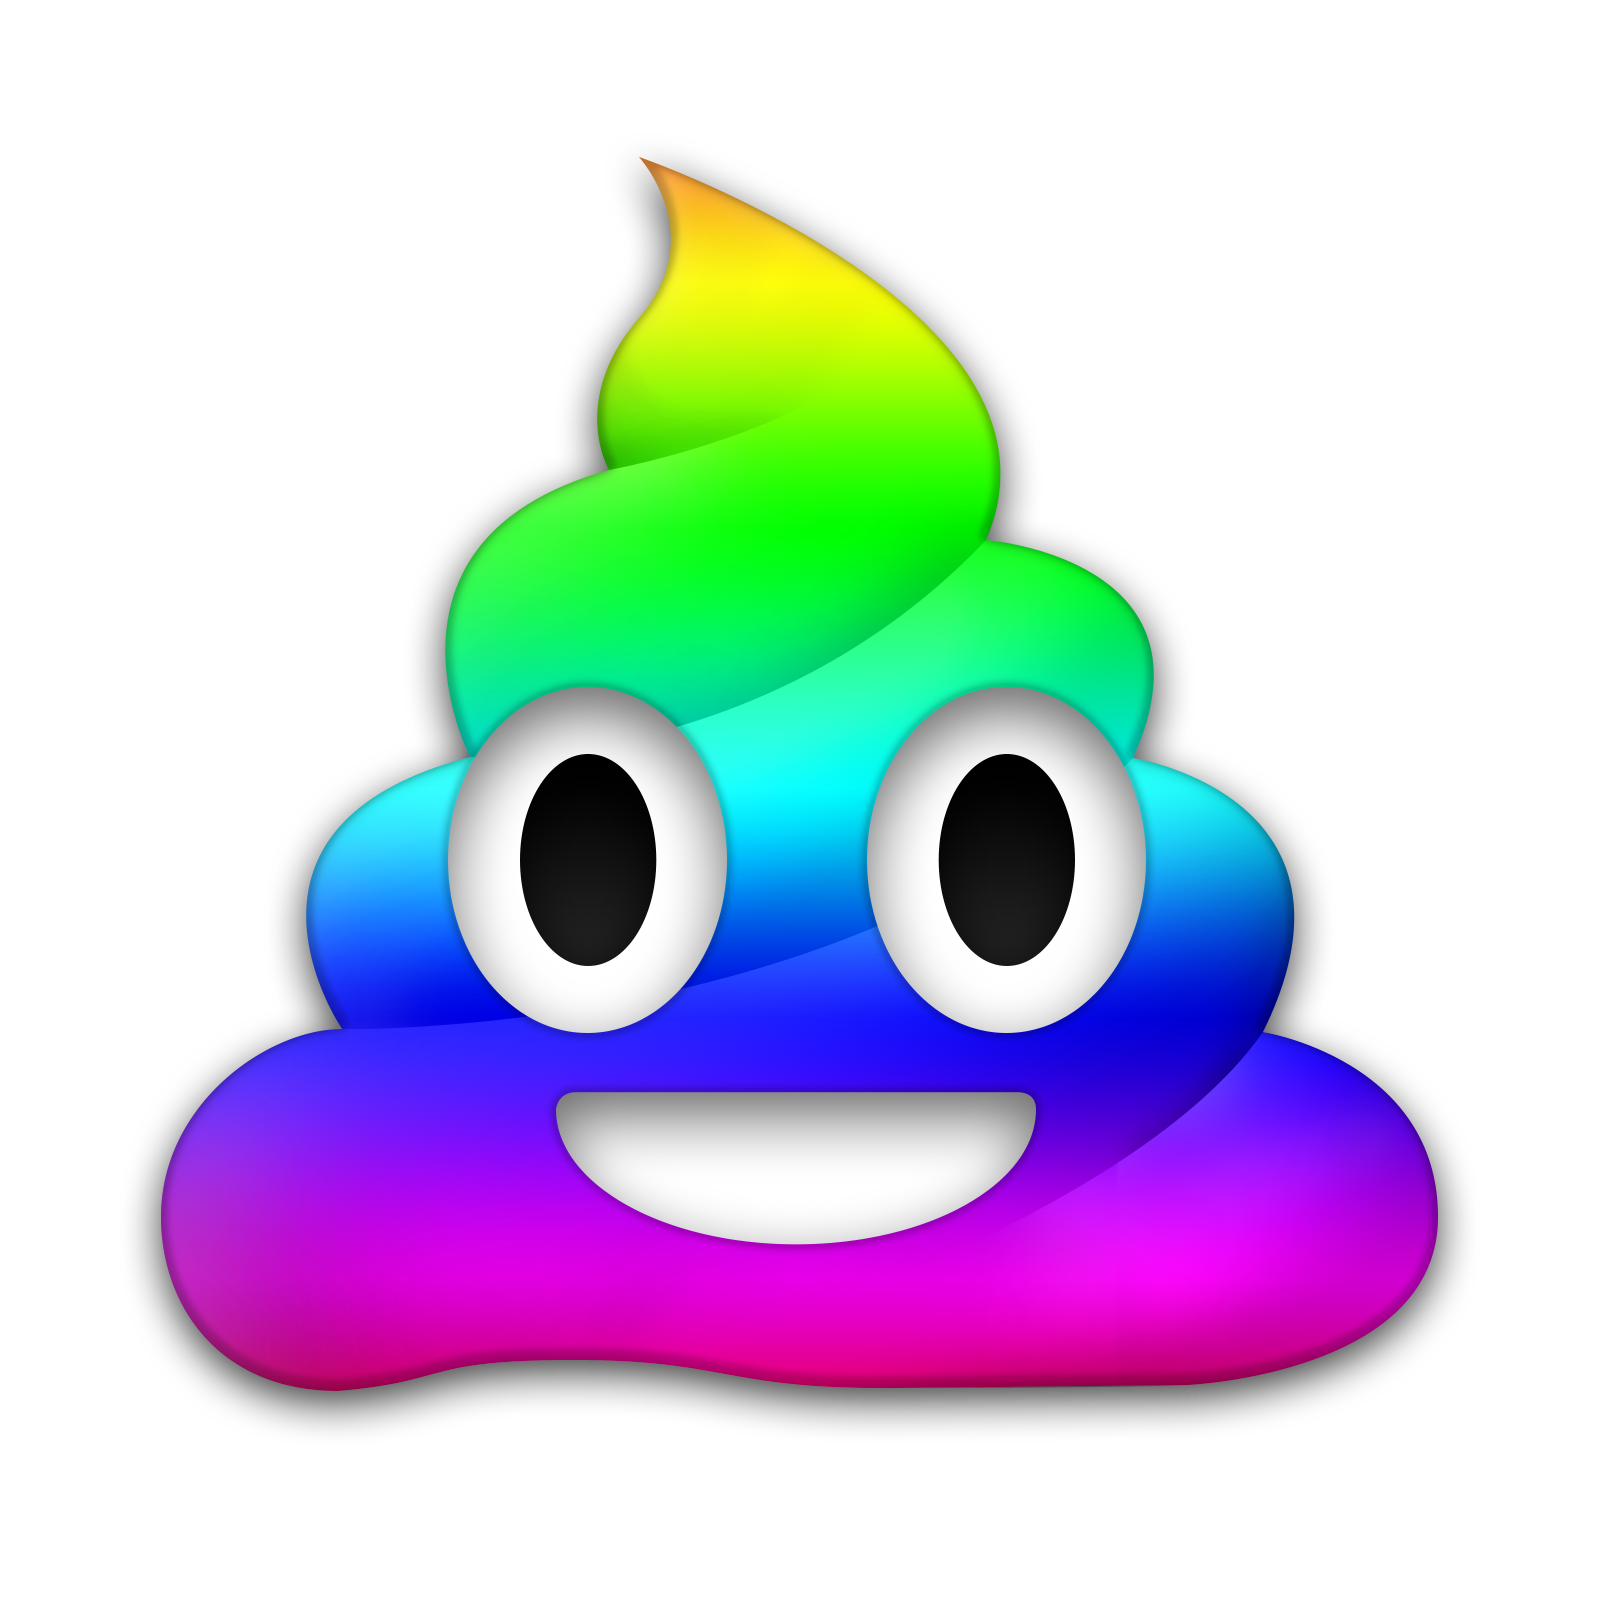 ดาวน์โหลด Vector Poop Emoji Png ฟรี Png Arts